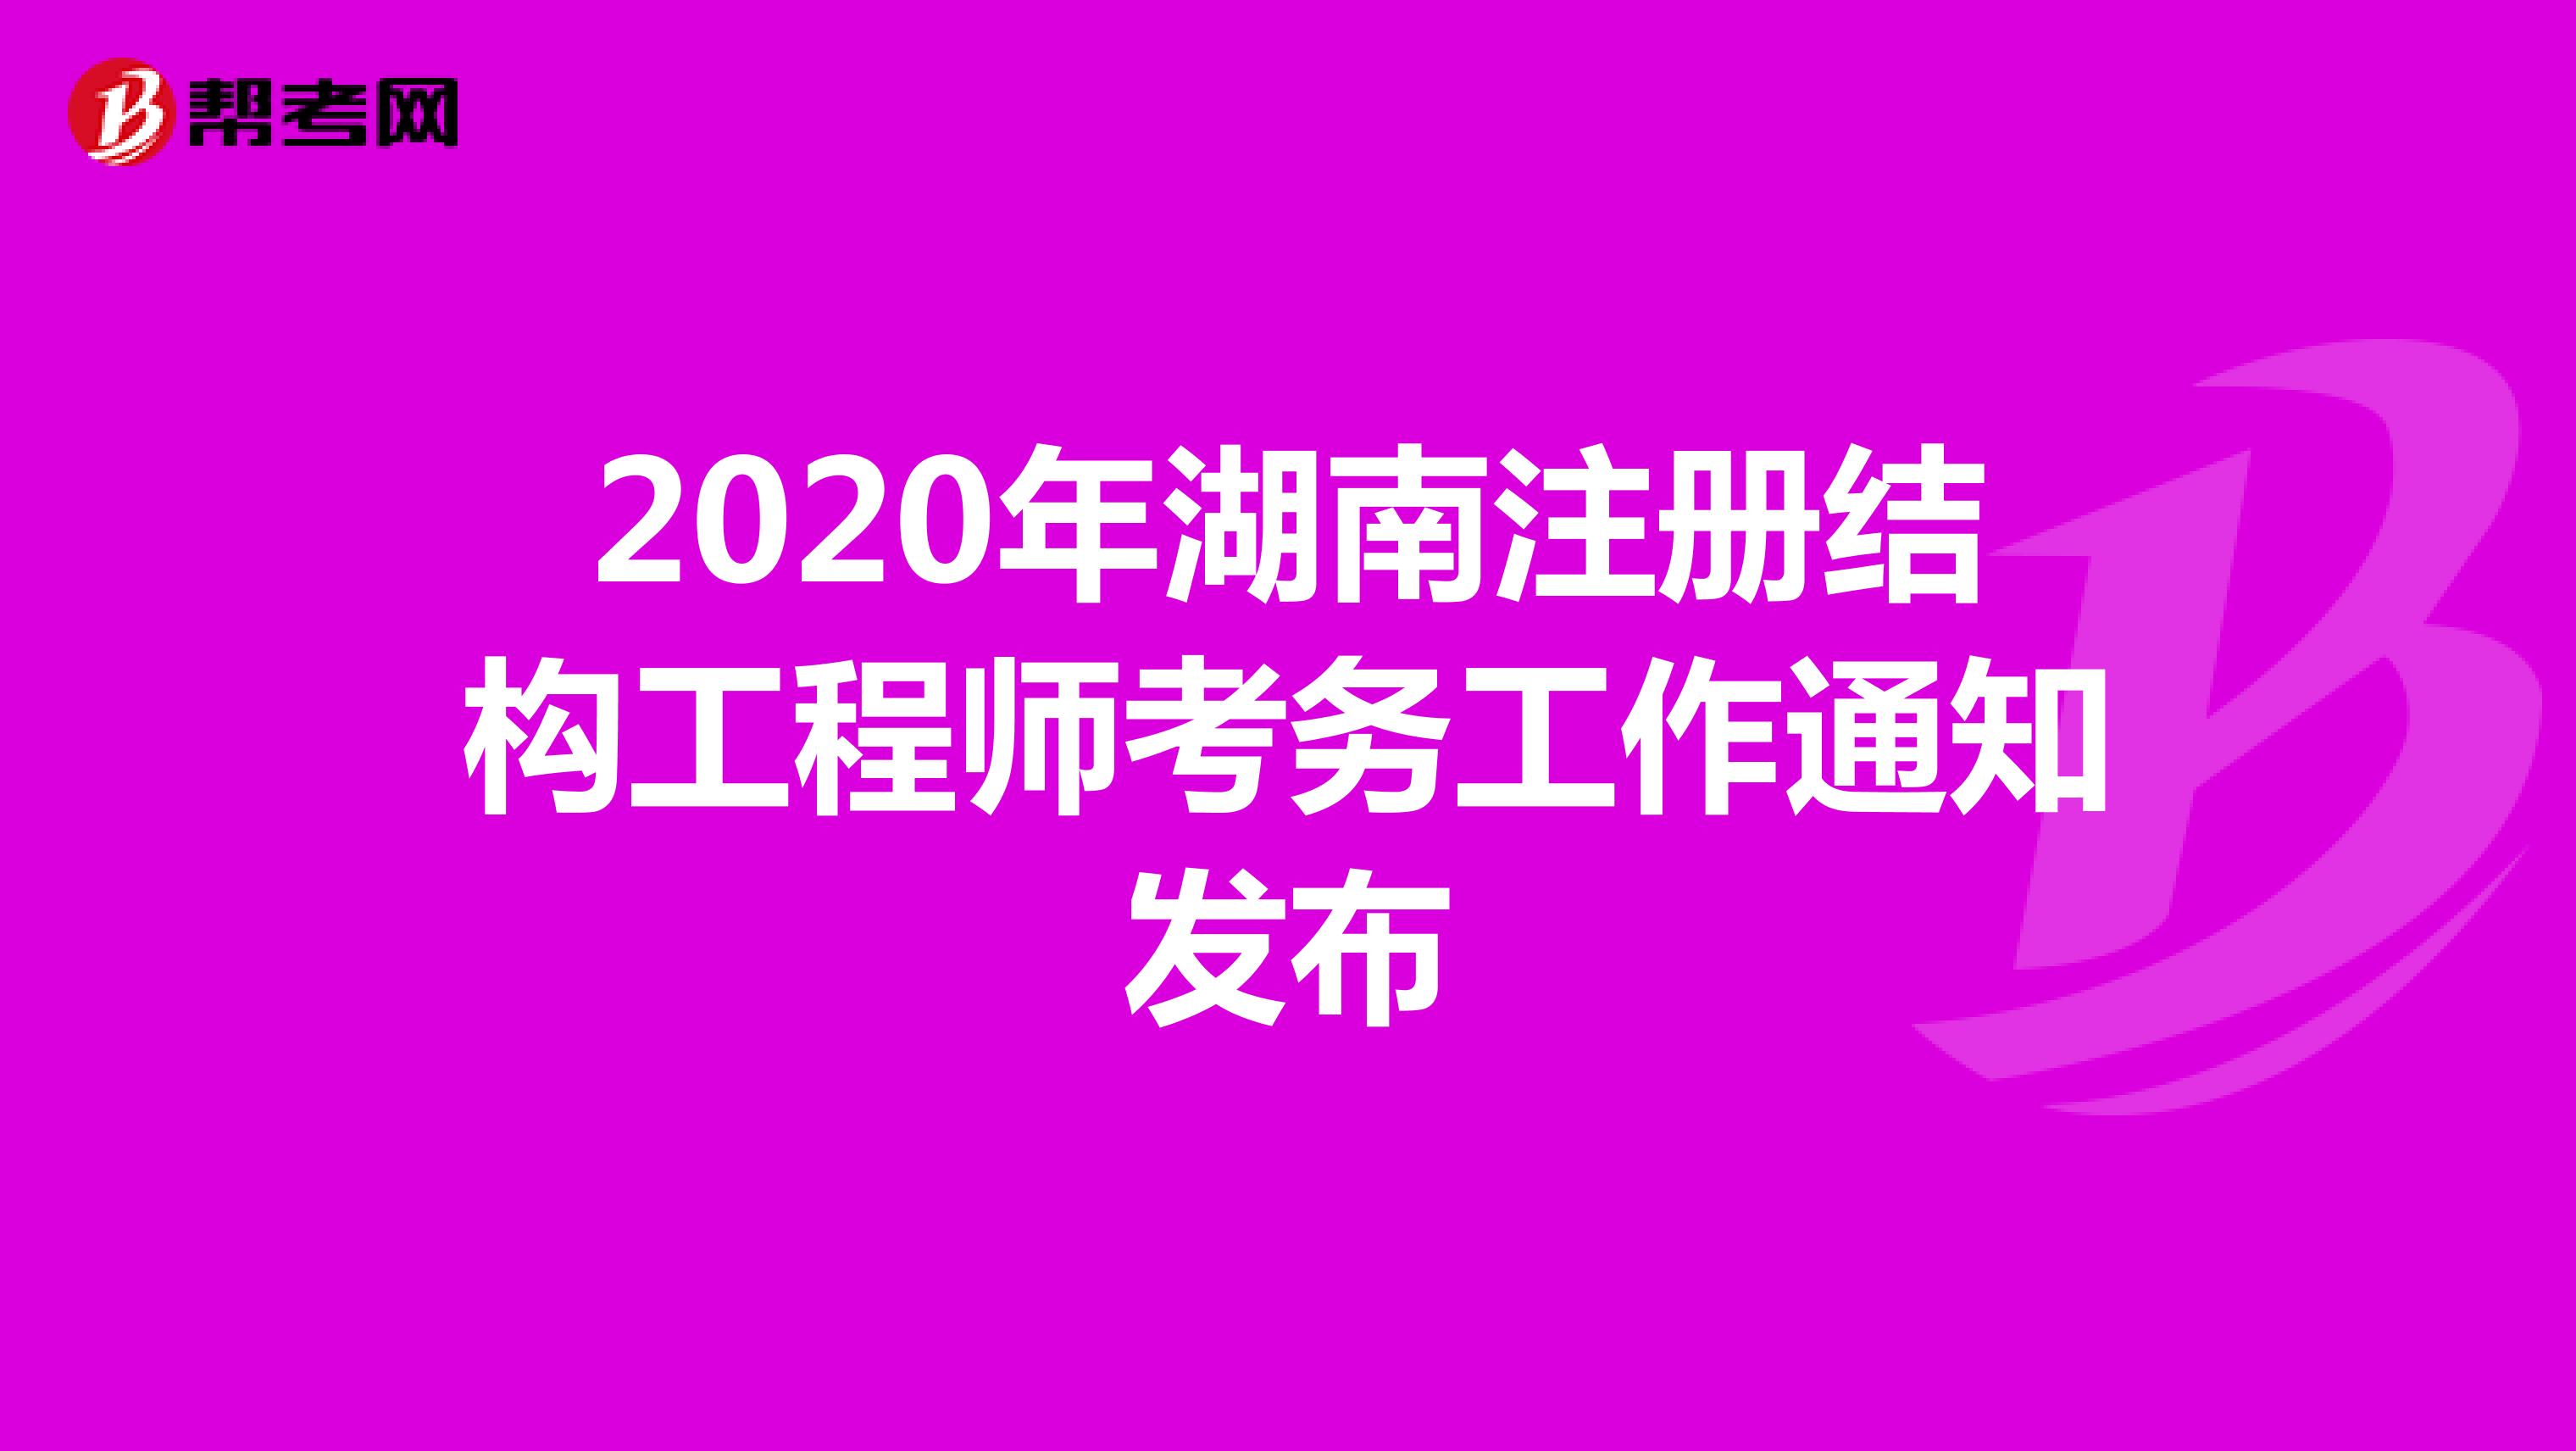 2020年湖南注册结构工程师考务工作通知发布